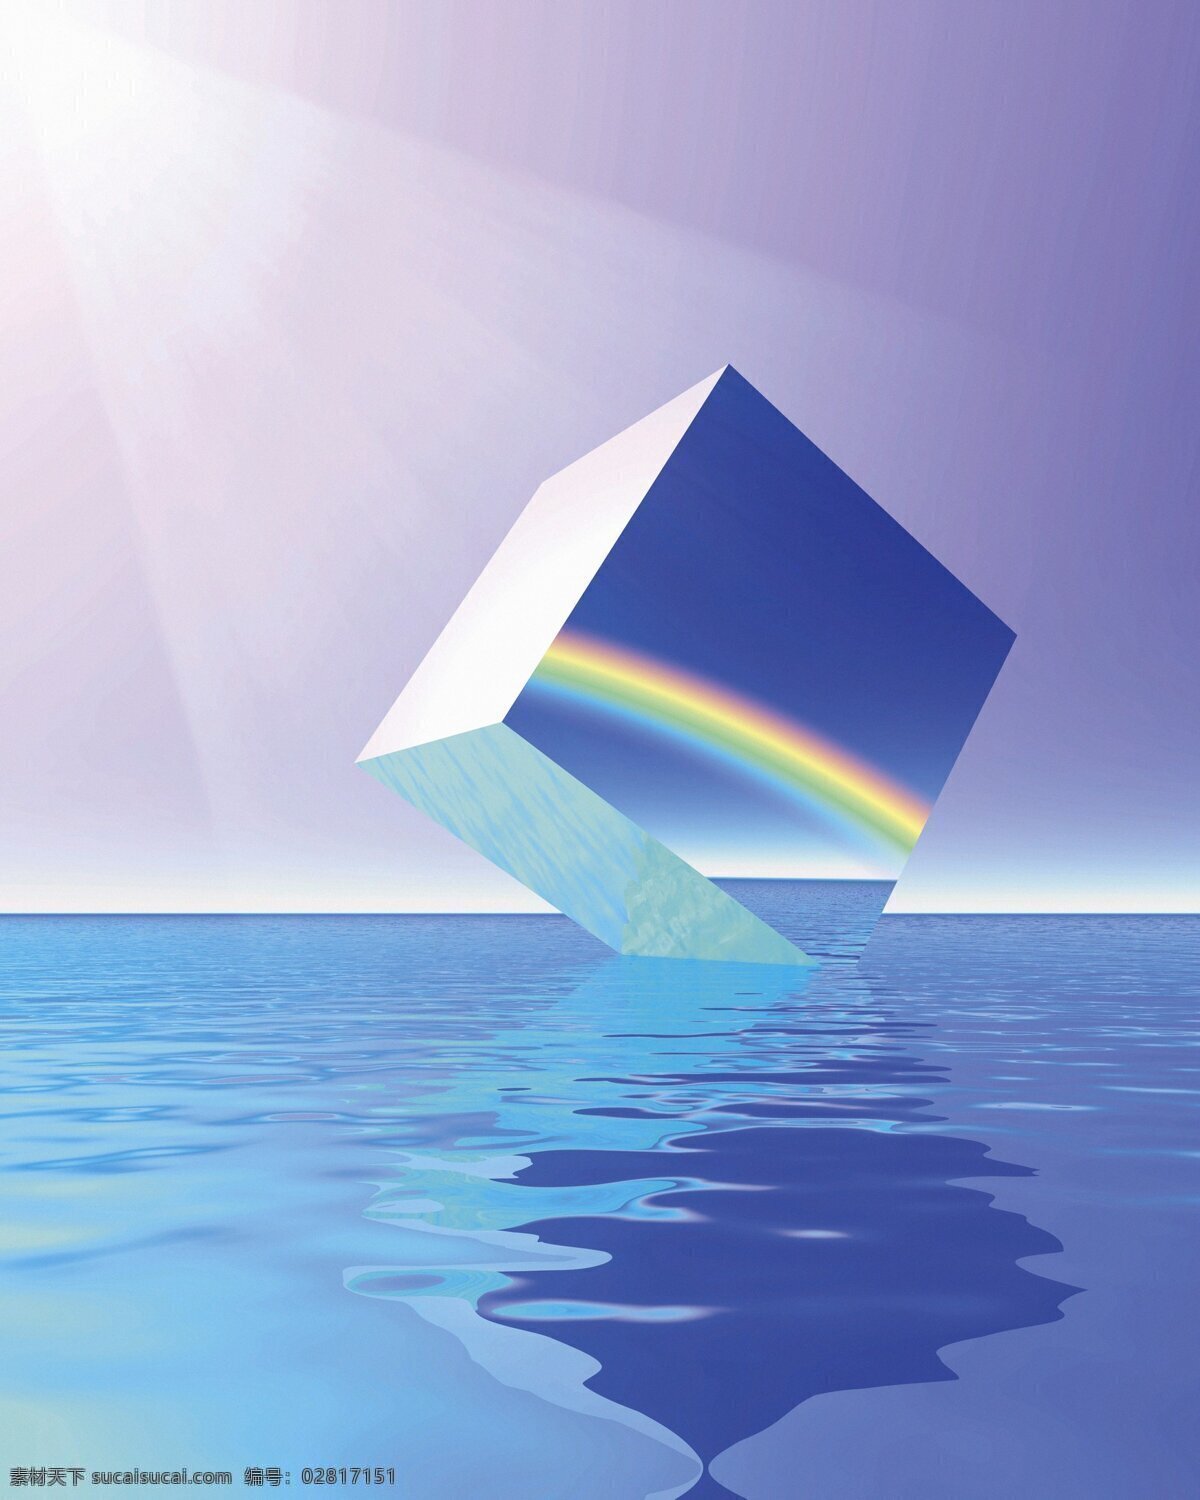 海平面 上 立方体 海面 彩虹 广告素材 抽象底纹 底纹边框